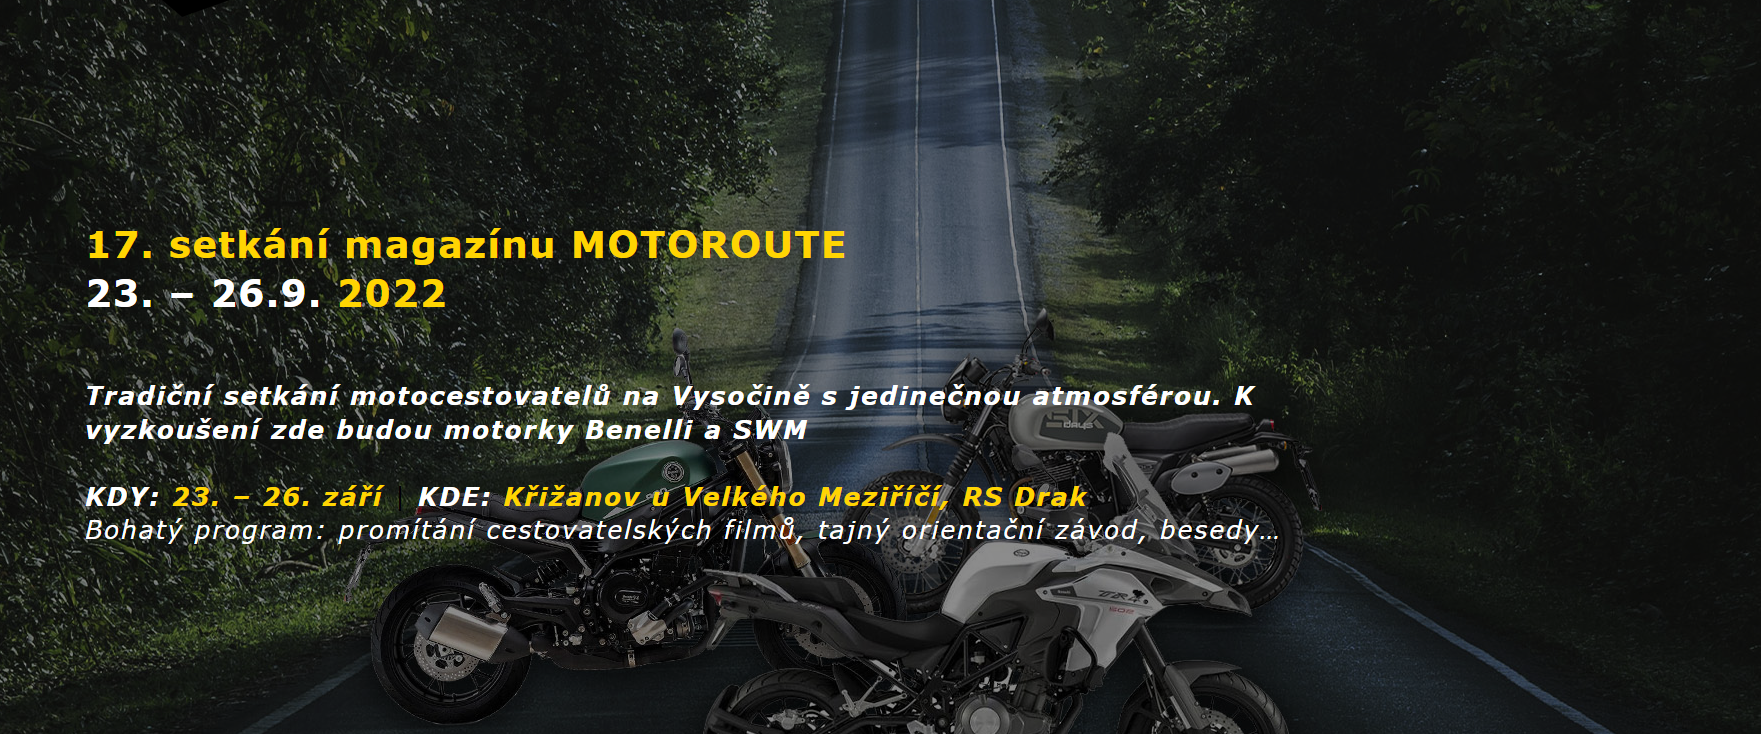 Rezervace testovací jízdy 17. setkání magazínu MOTOROUTE